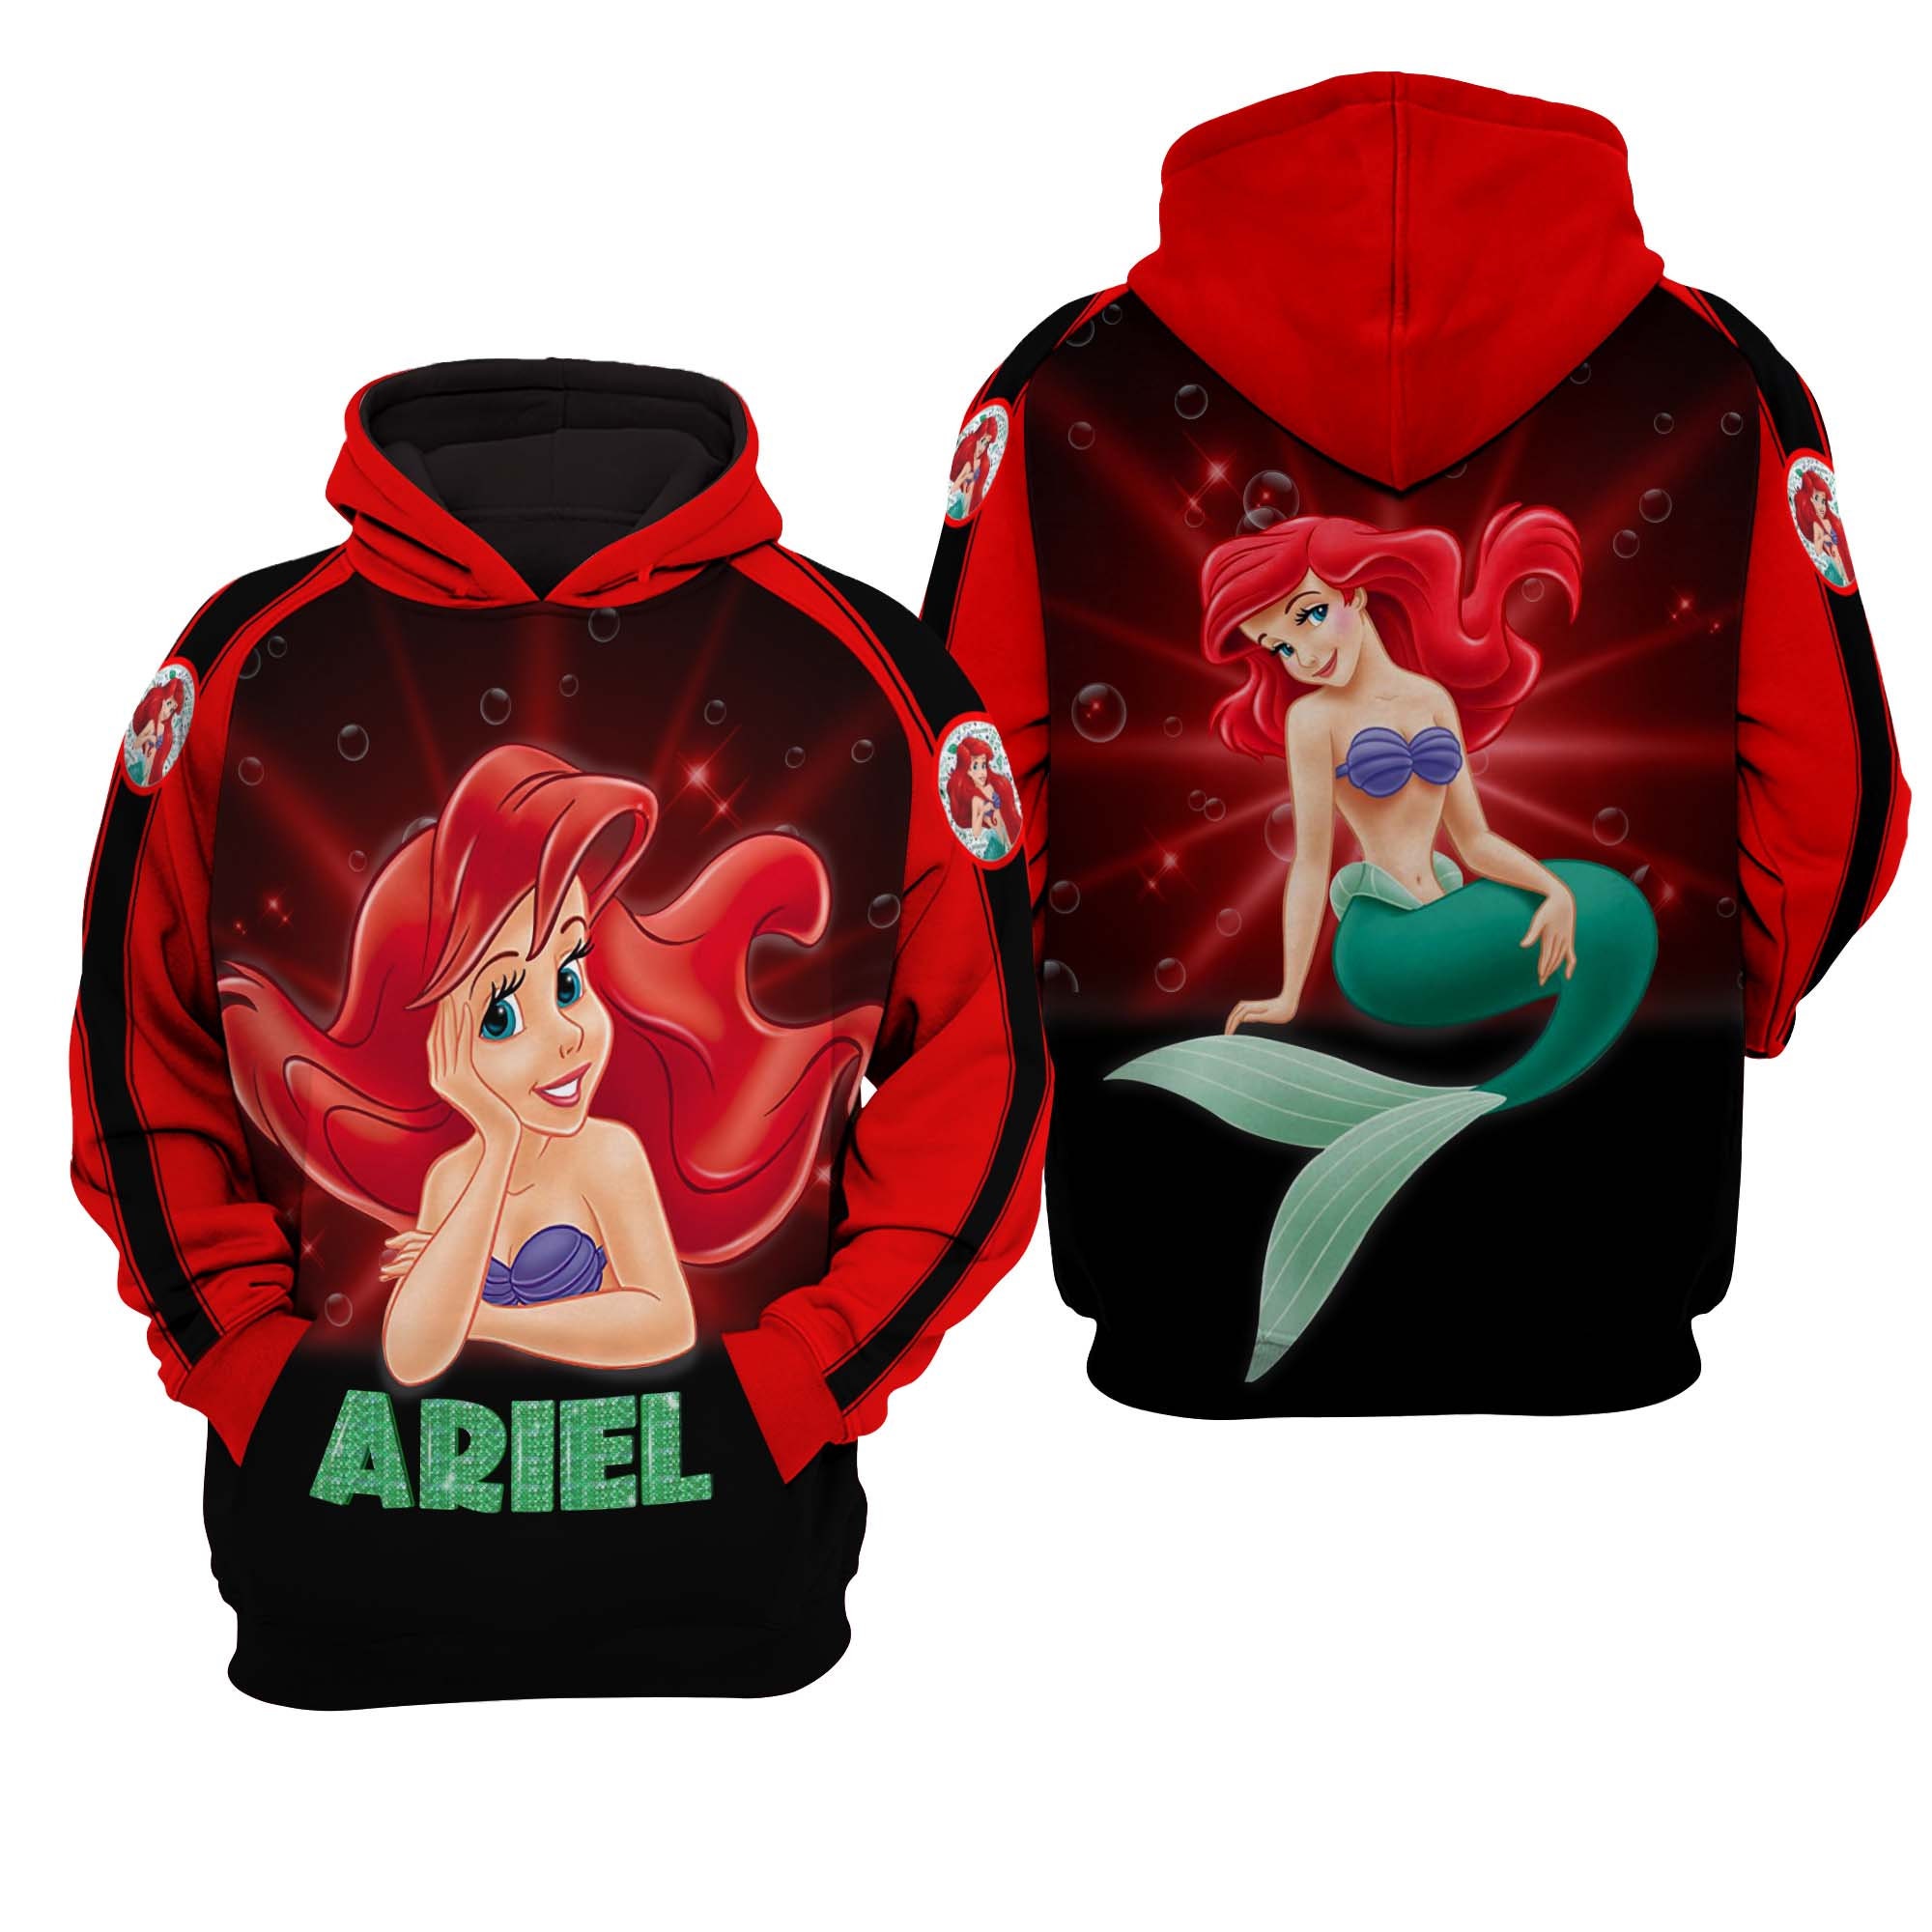 Ariel The Little Mermaid Disney 3D Hoodie